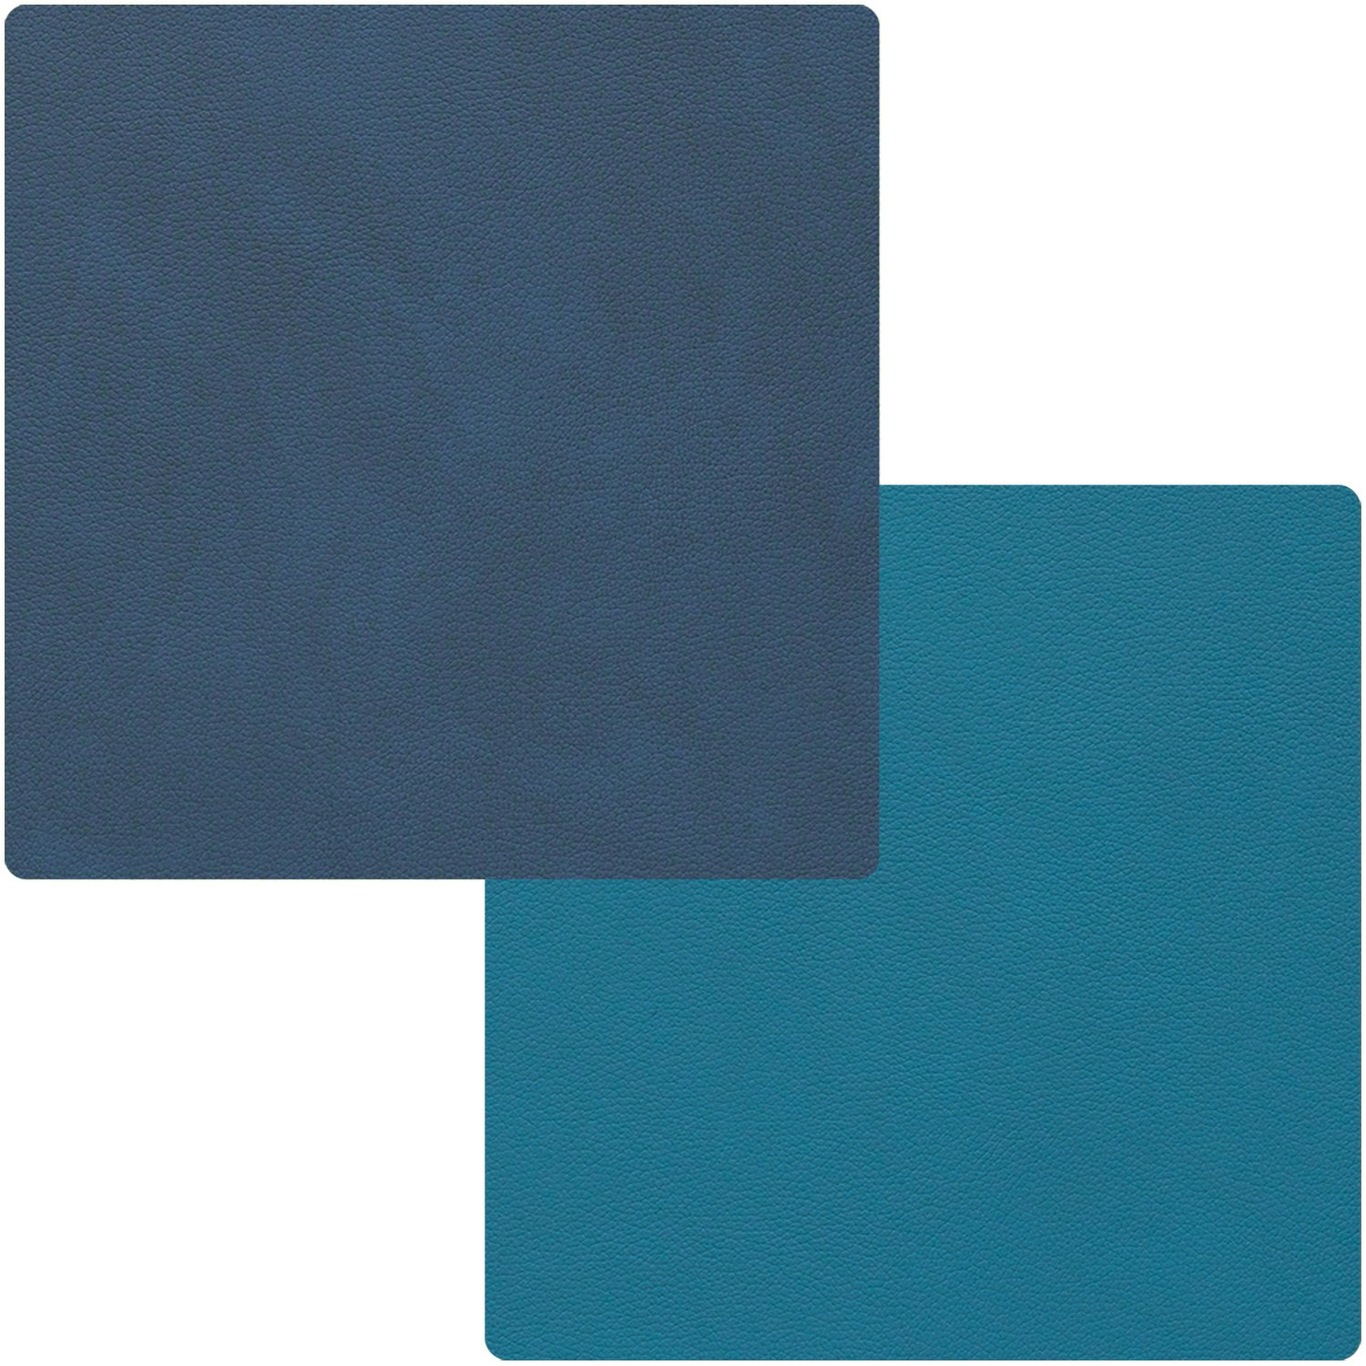 Square Vendbar Glasbrik 10x10 cm, Midnight Blue/Petrol